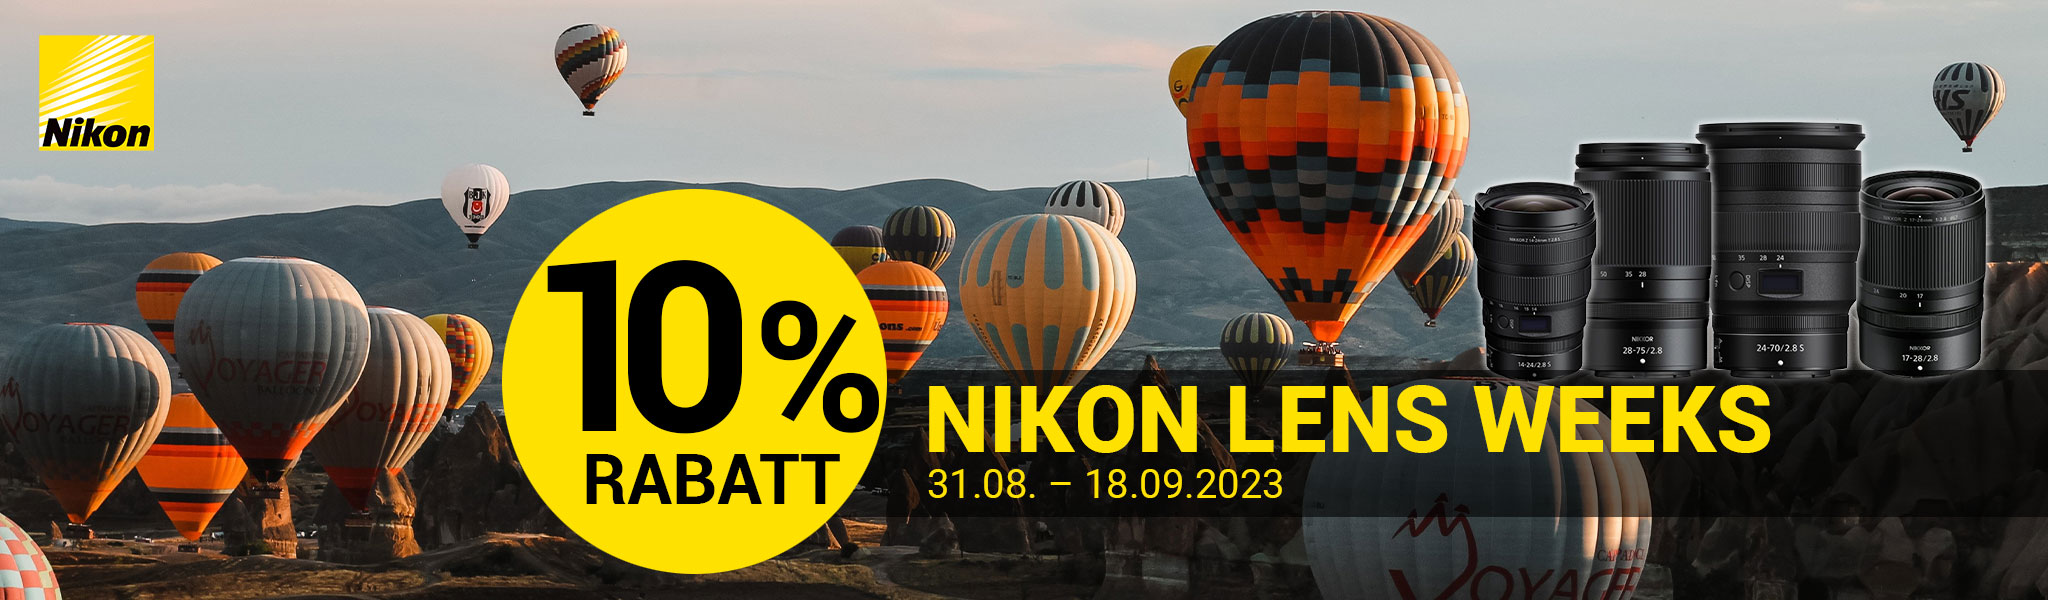 Nikon Lens Weeks 31.08.2023-18.09.2023 bei Fotomax in Nürnberg und Berlin